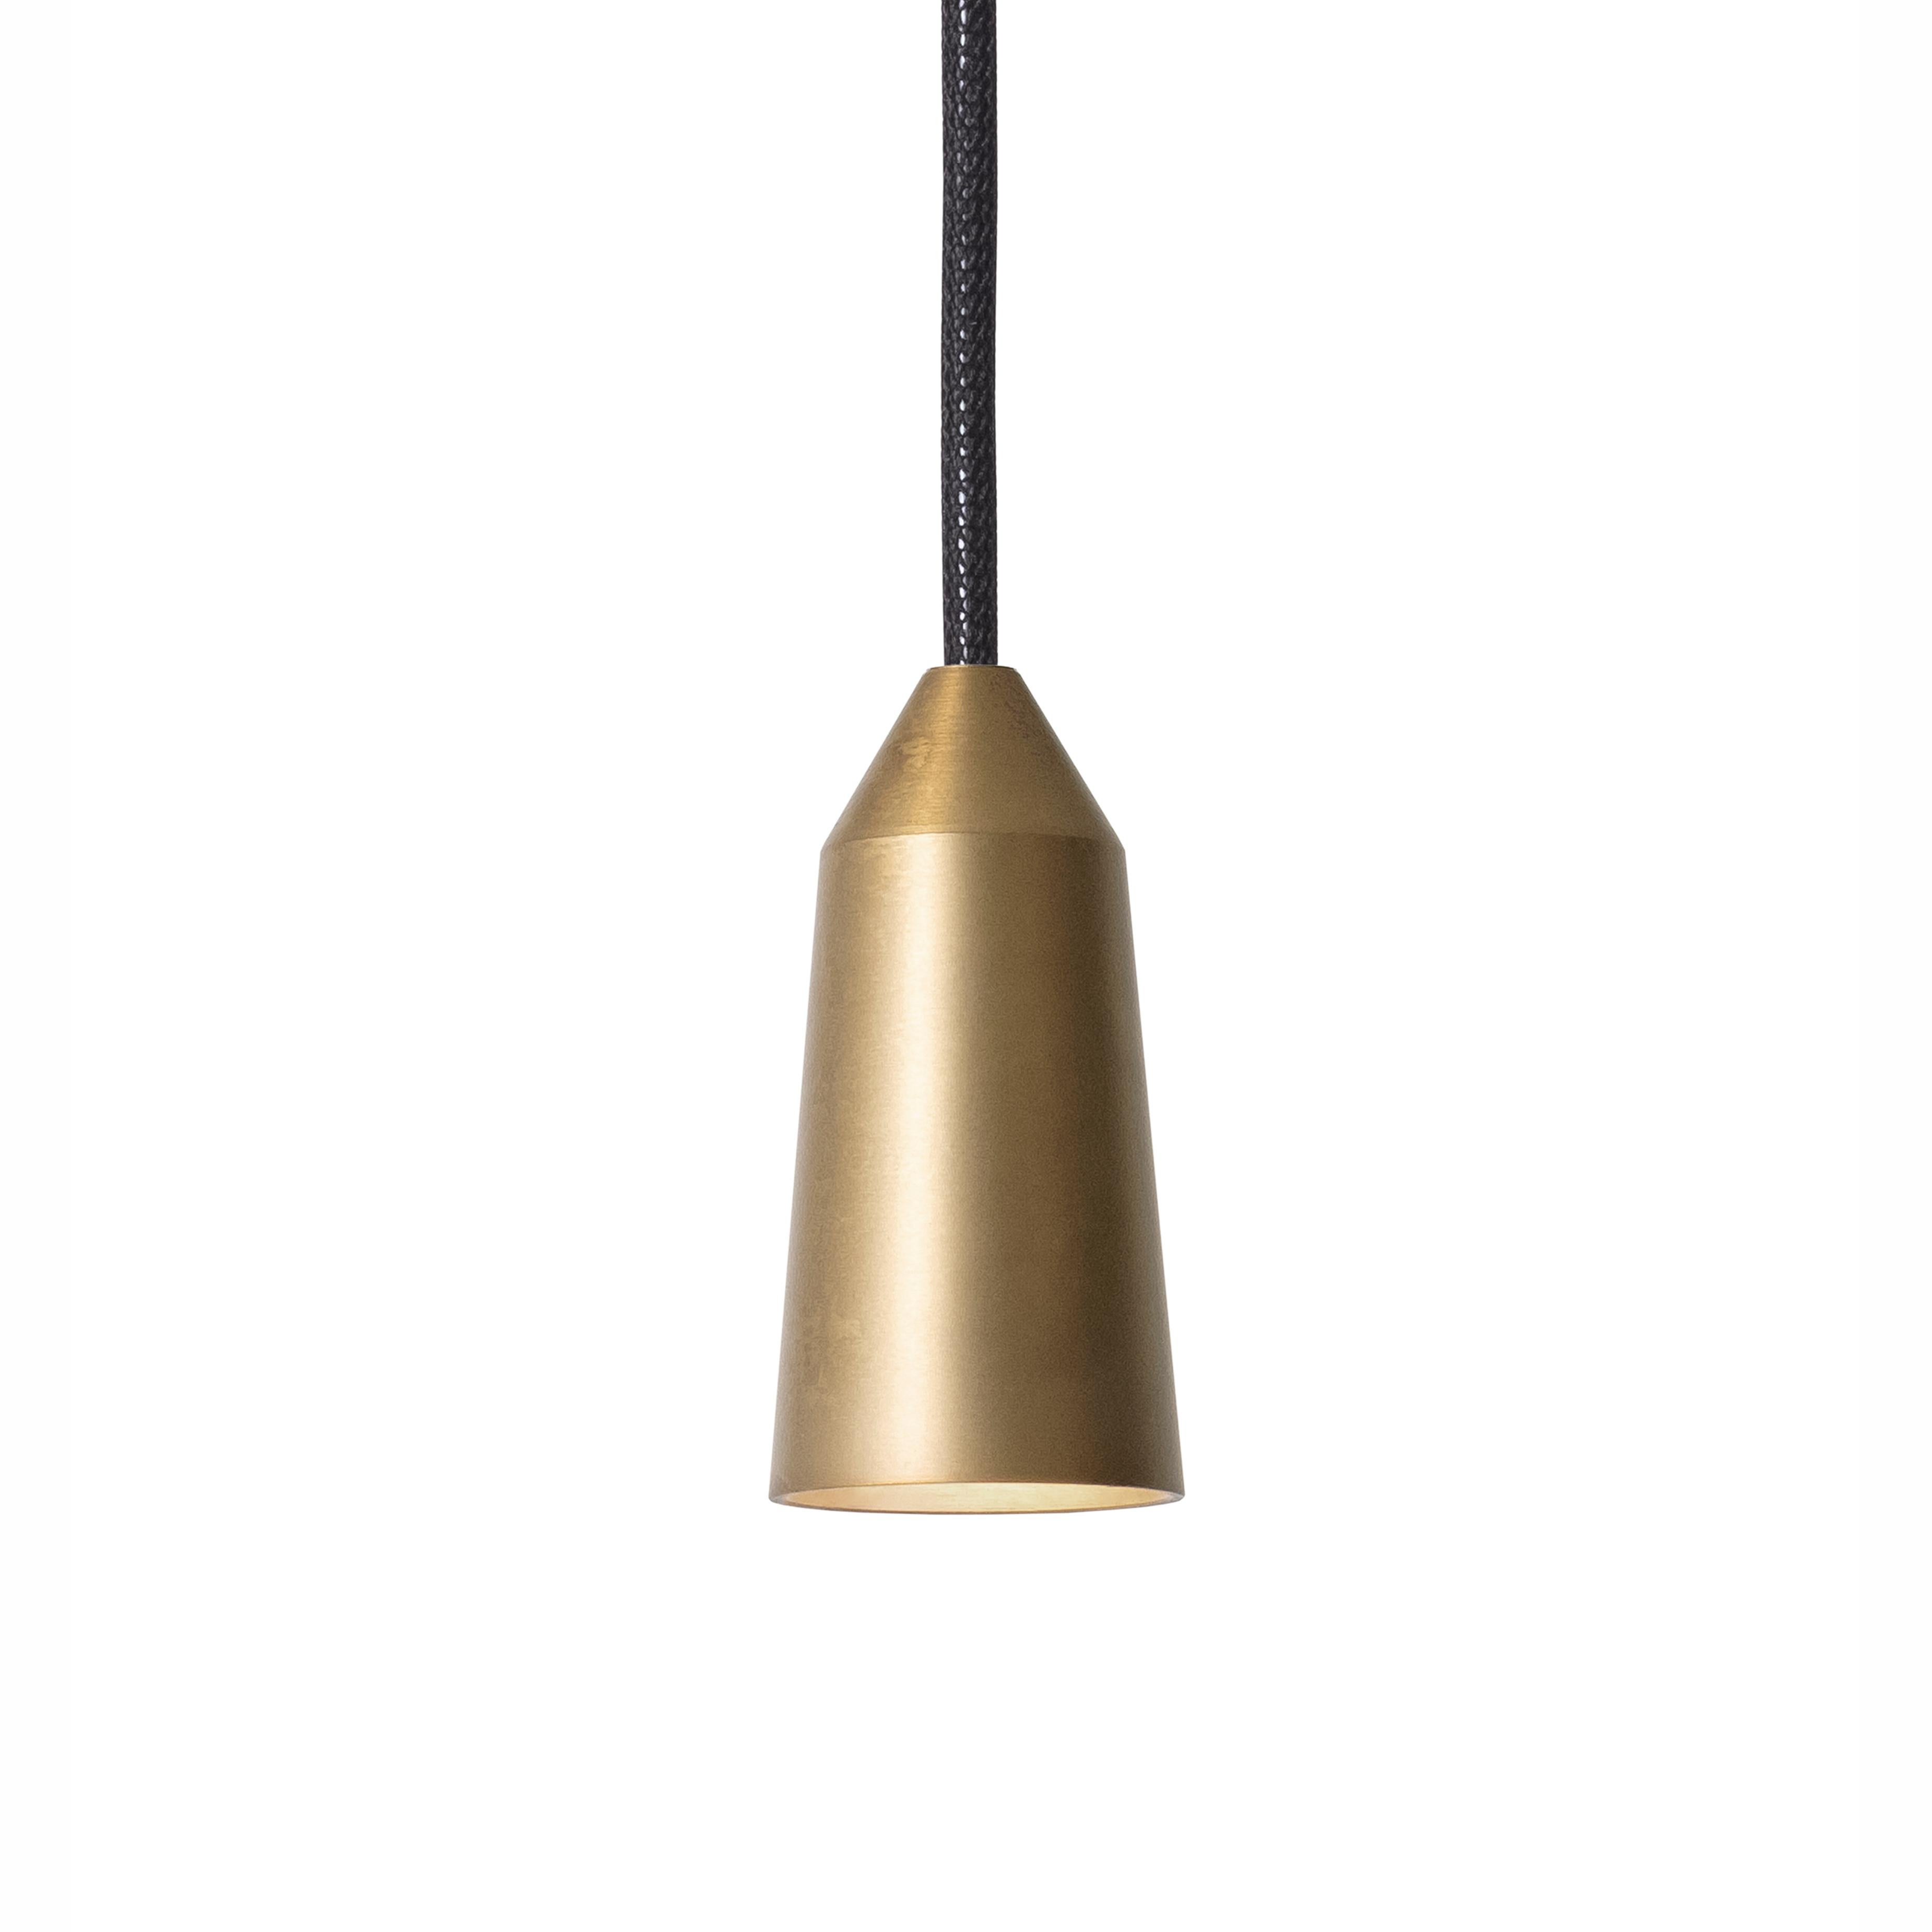 Henrik Tengler 3492-6 Massiv Lamp by Konsthantverk In New Condition For Sale In Barcelona, Barcelona